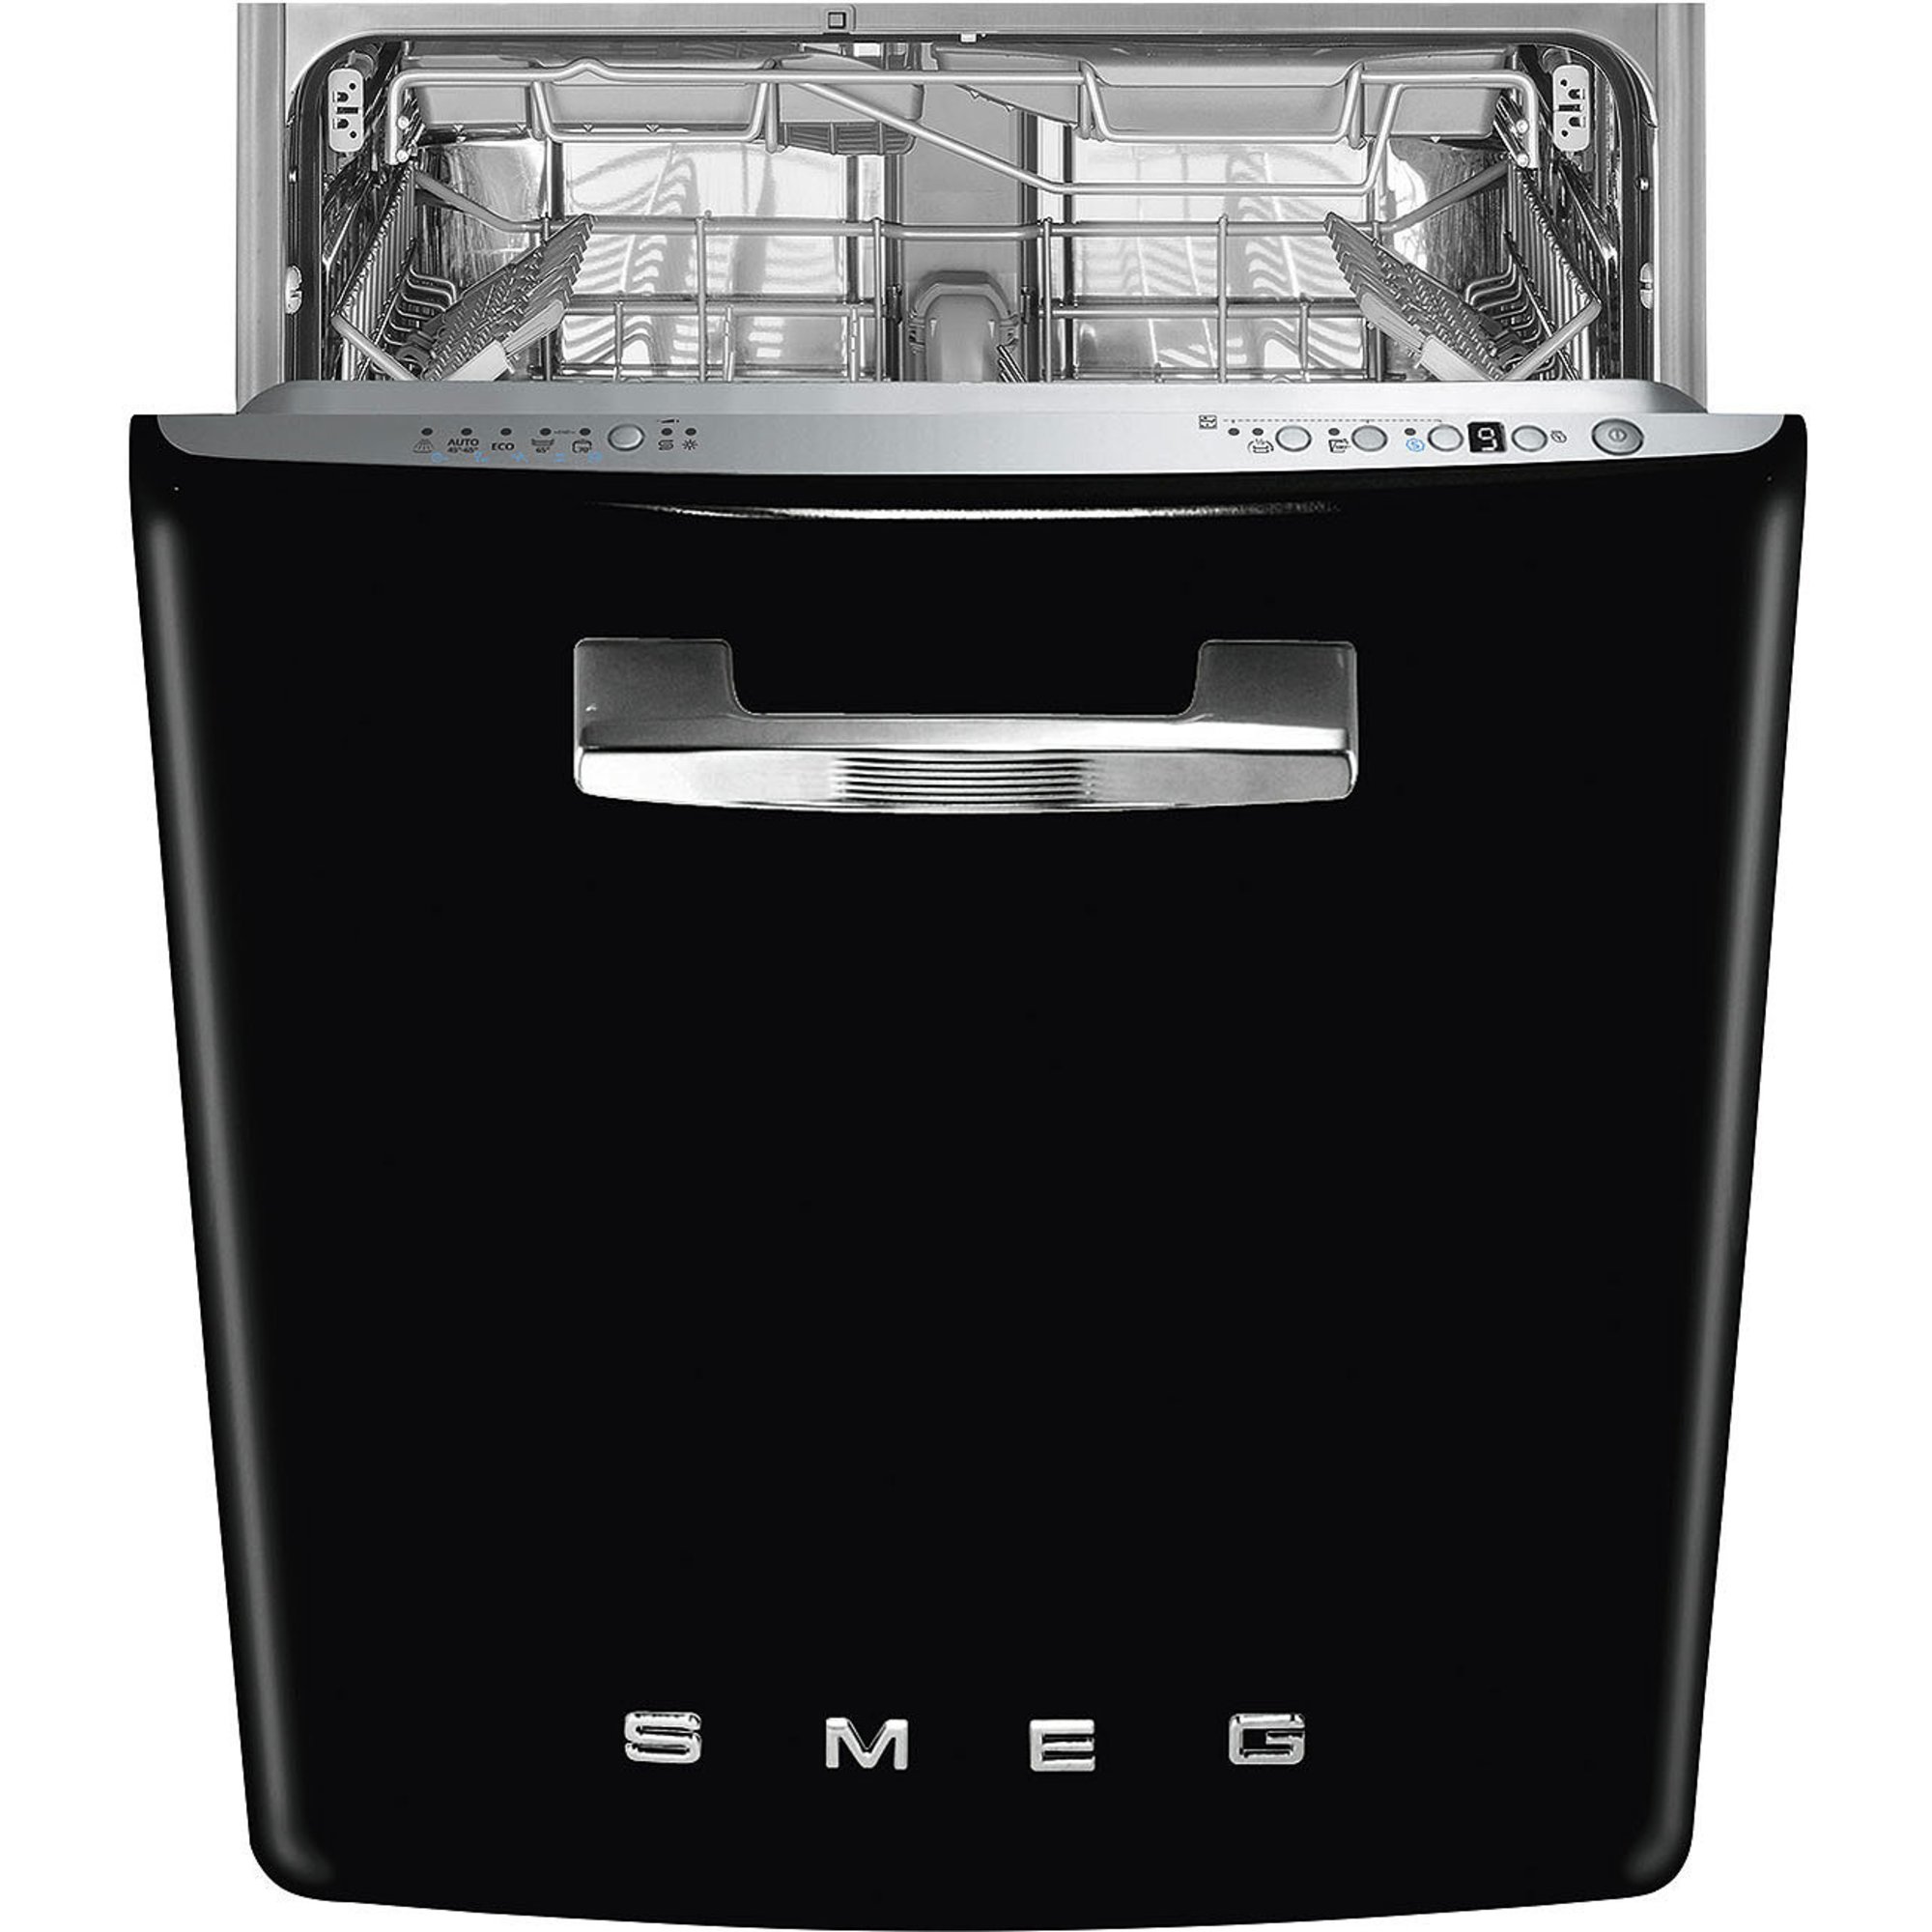 Smeg STFA3 underbygd oppvaskmaskin svart